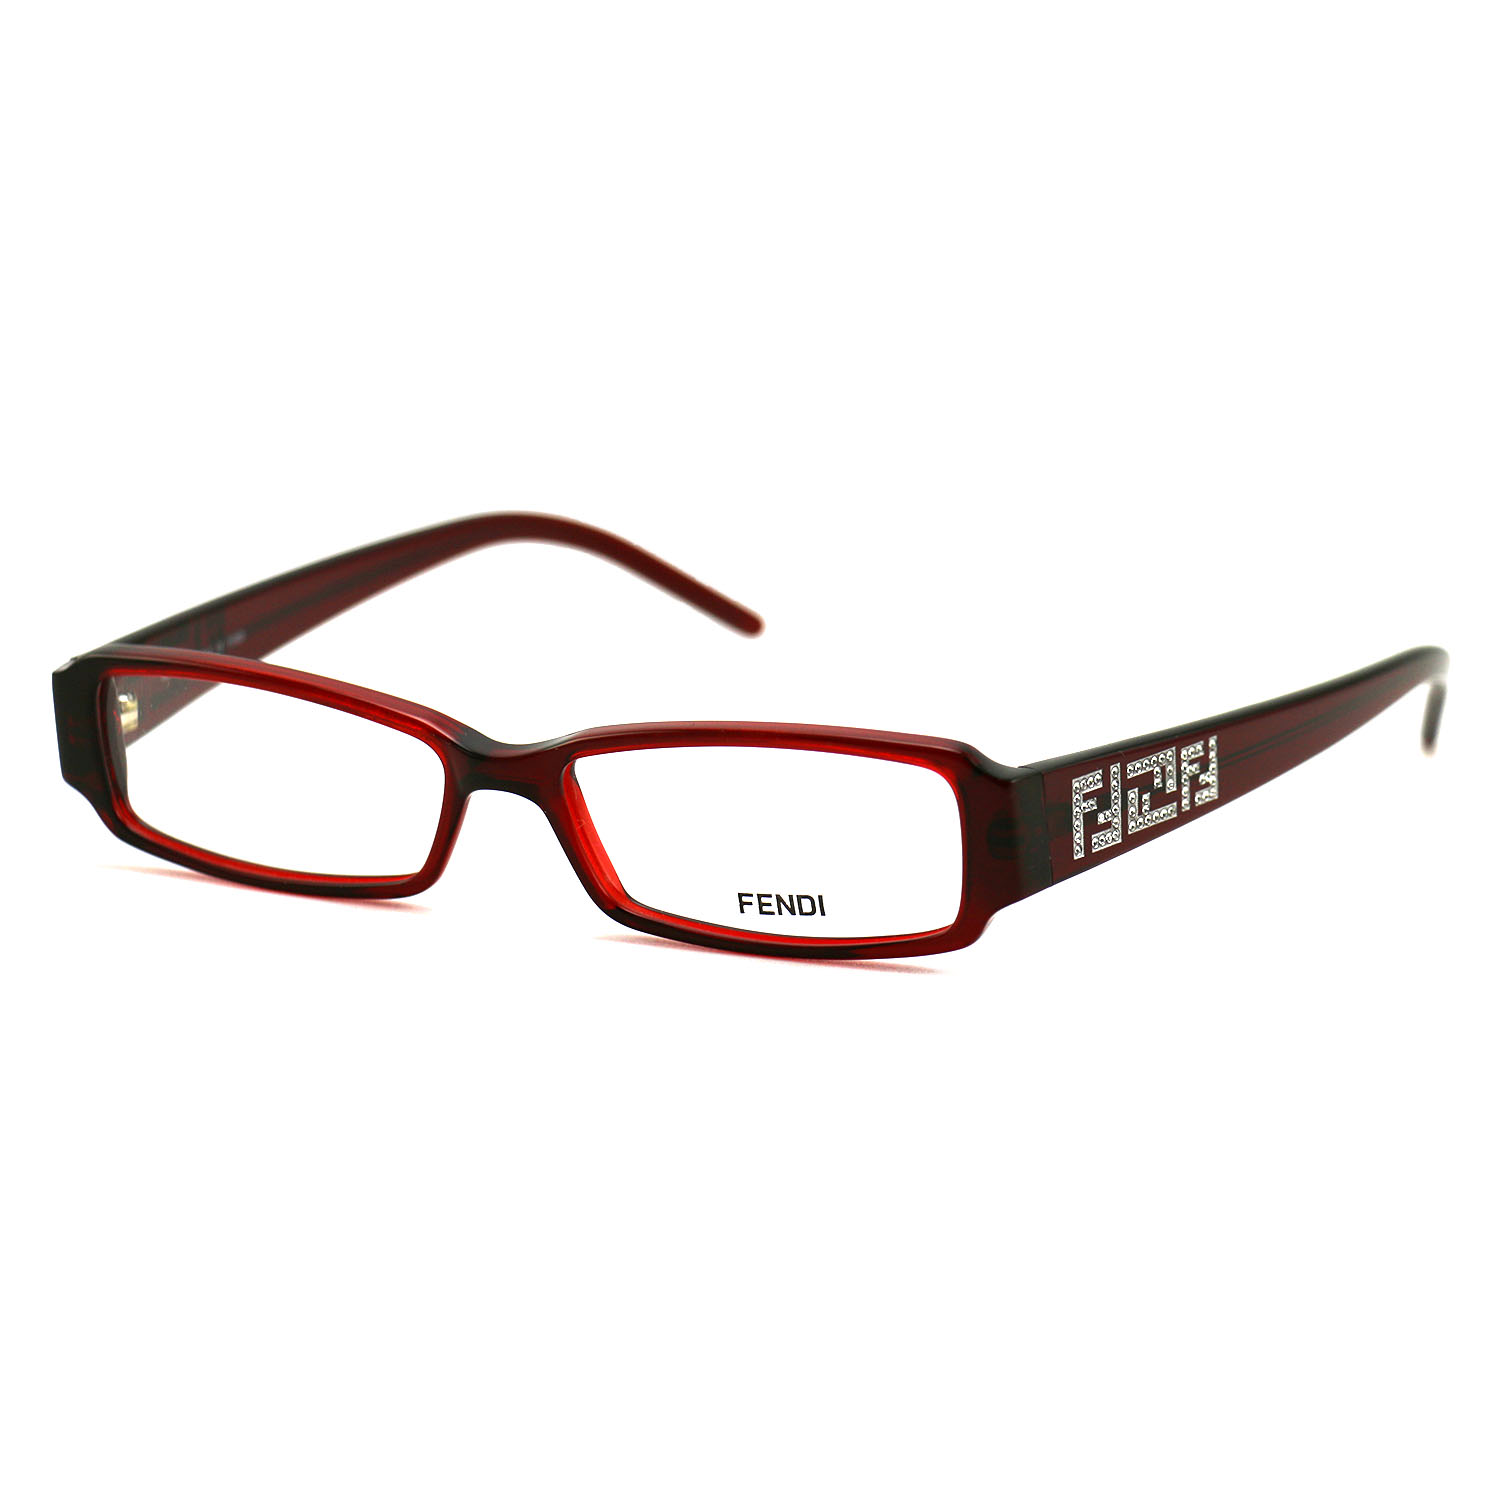 Fendi Women's Eyeglasses F809 238 Brown 51 16 130 Frames Rectangular ...